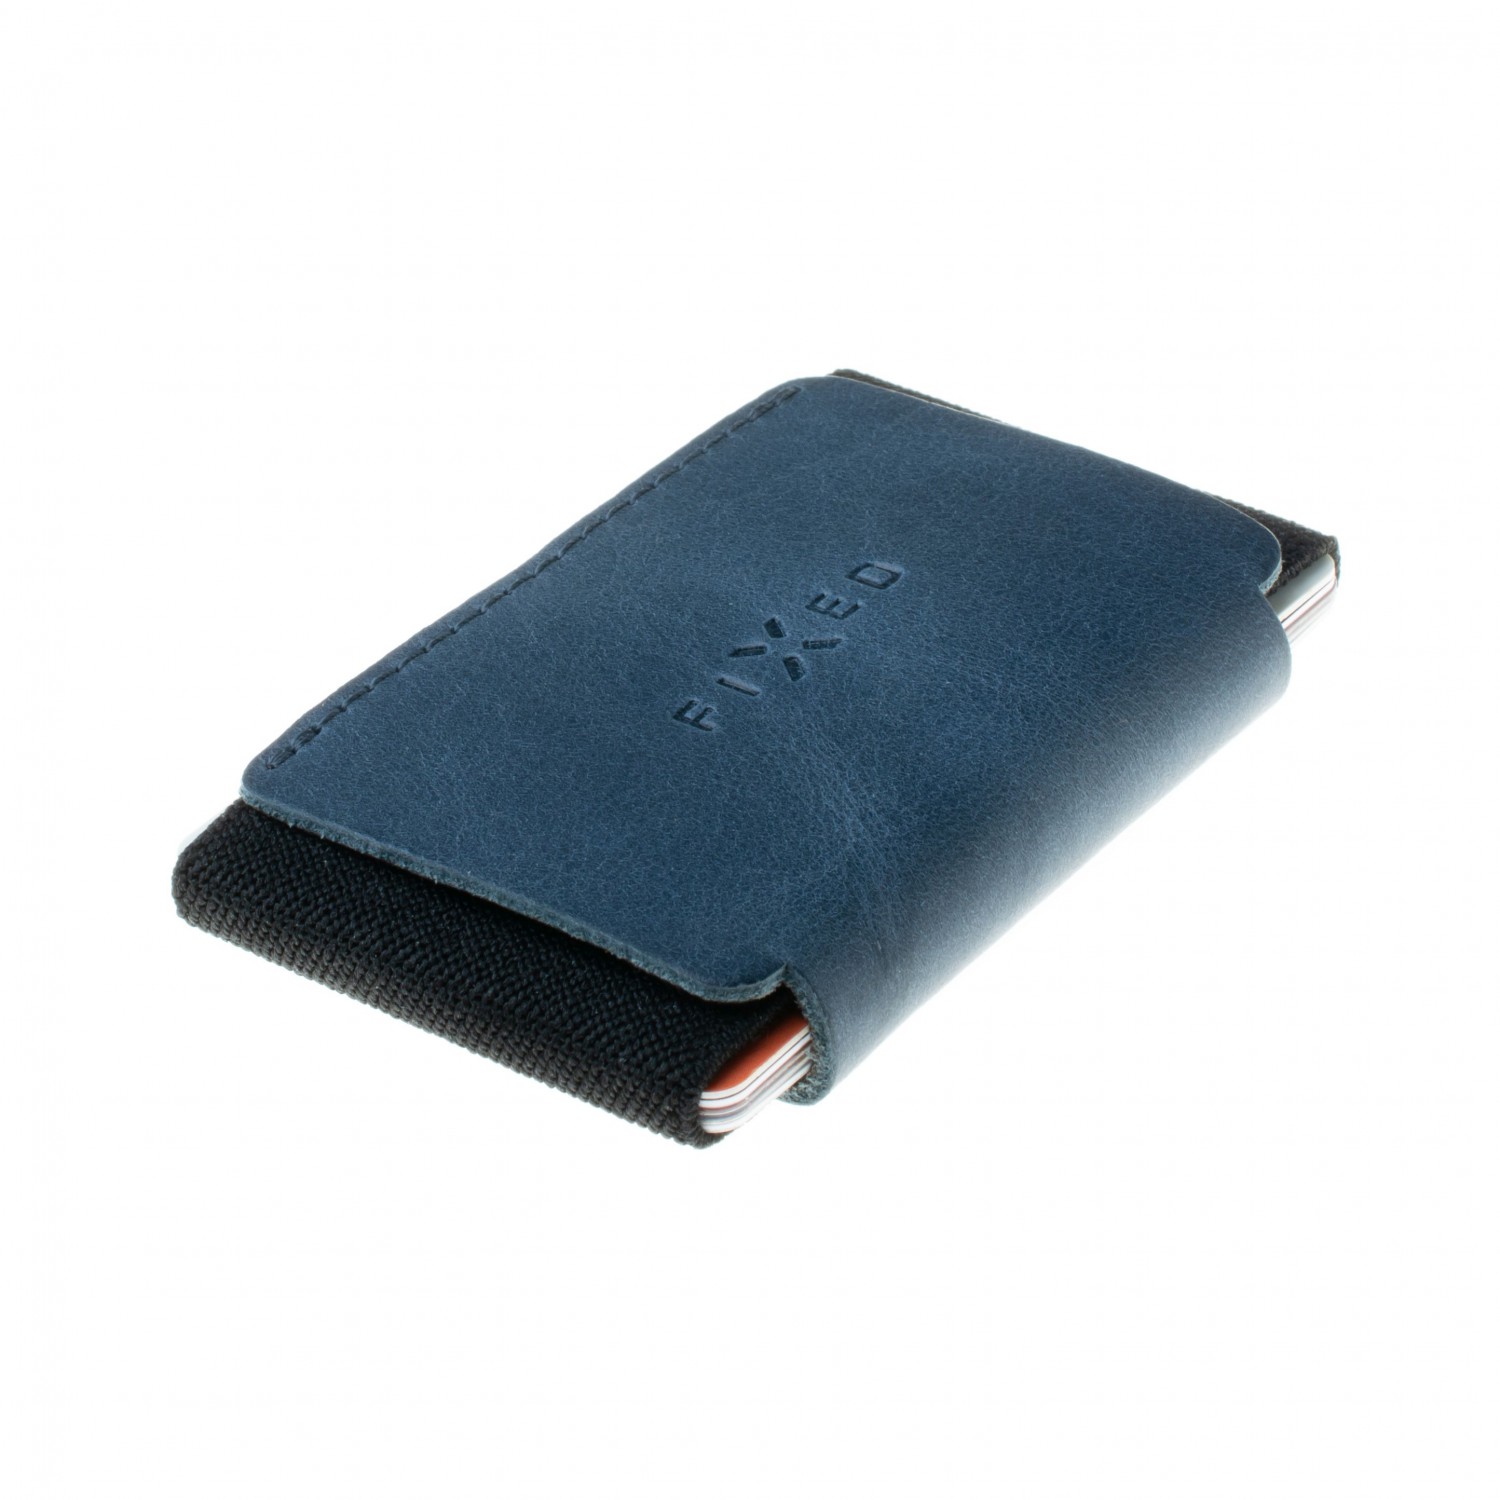 FIXED Tiny Wallet kožená peněženka z pravé hovězí kůže, modrá